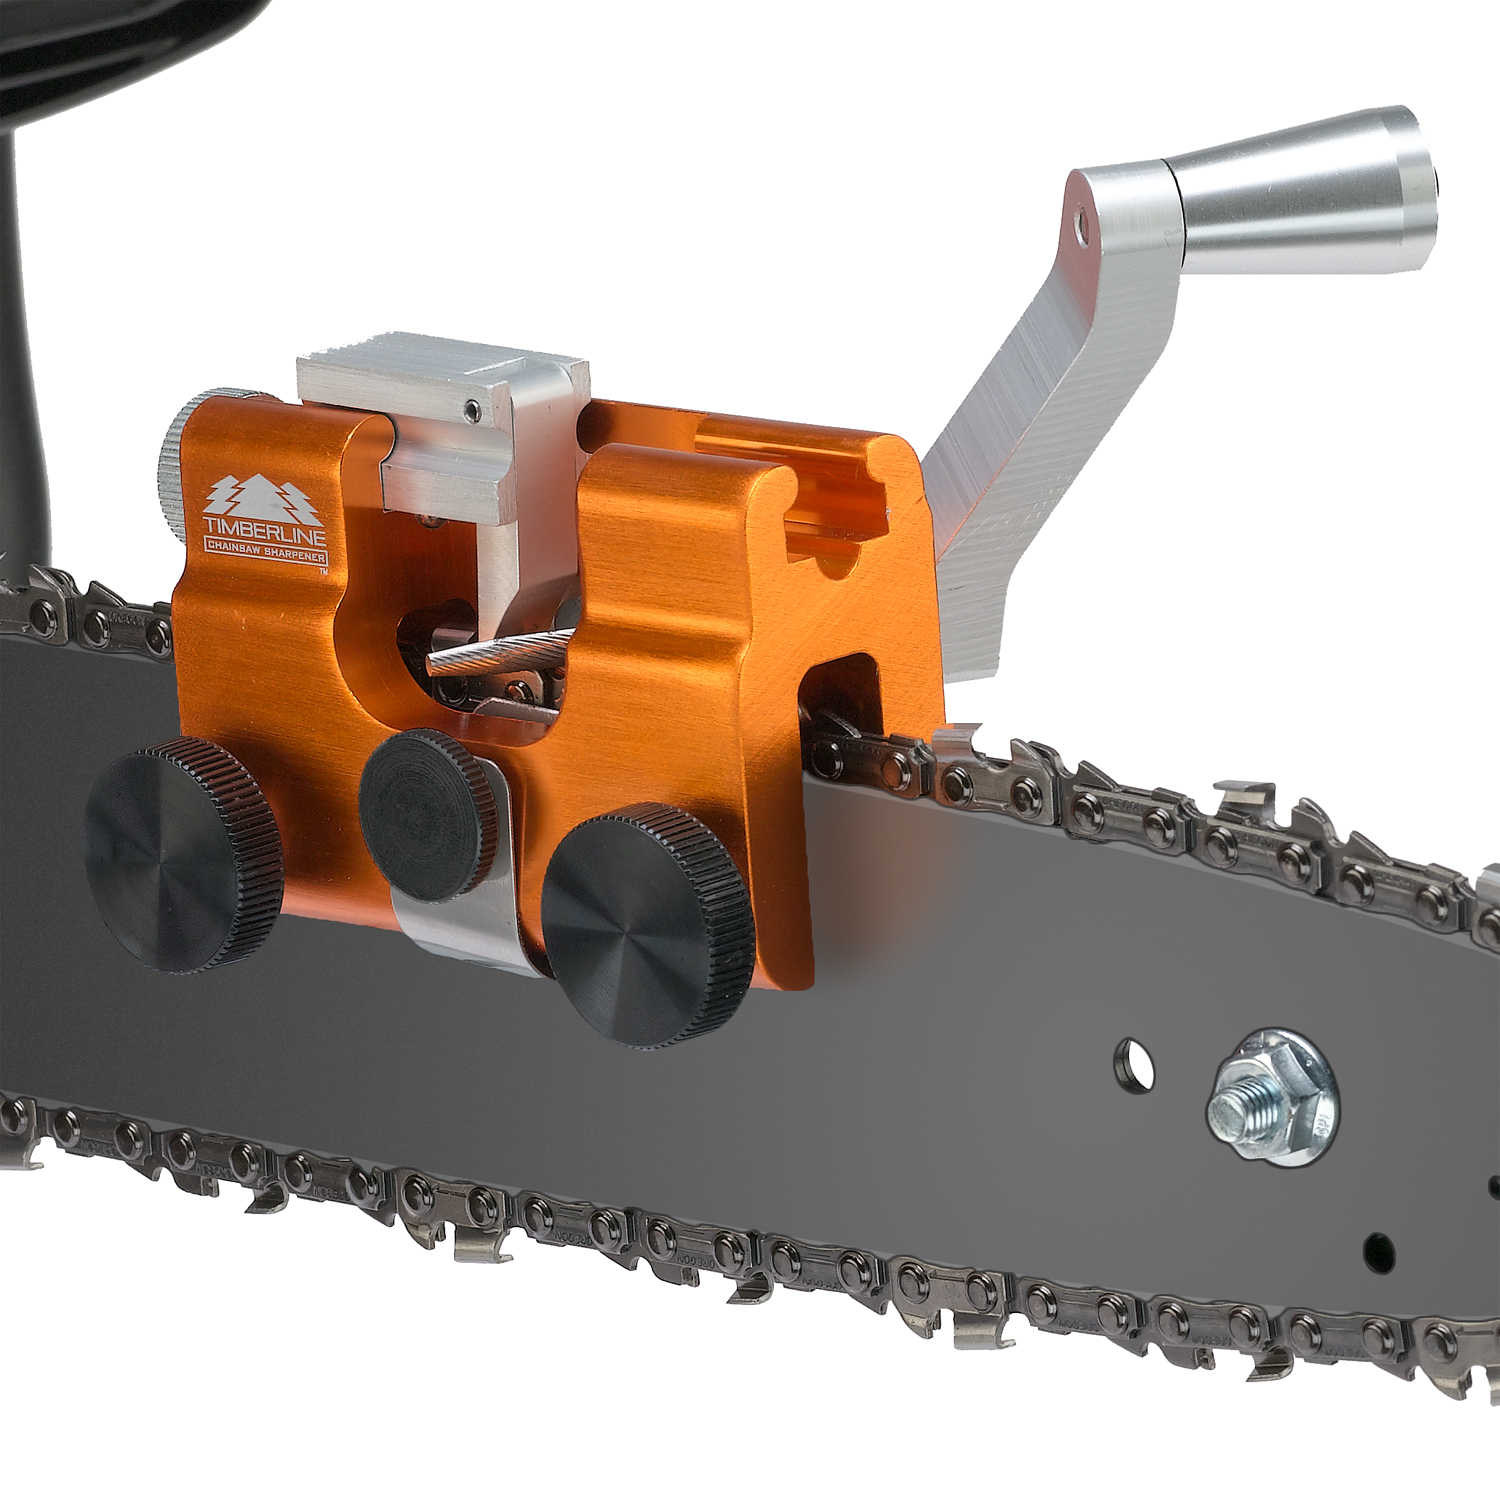 Genuine Timberline Carbide Chainsaw Cutter/Sharpener 5/32" 4mm 